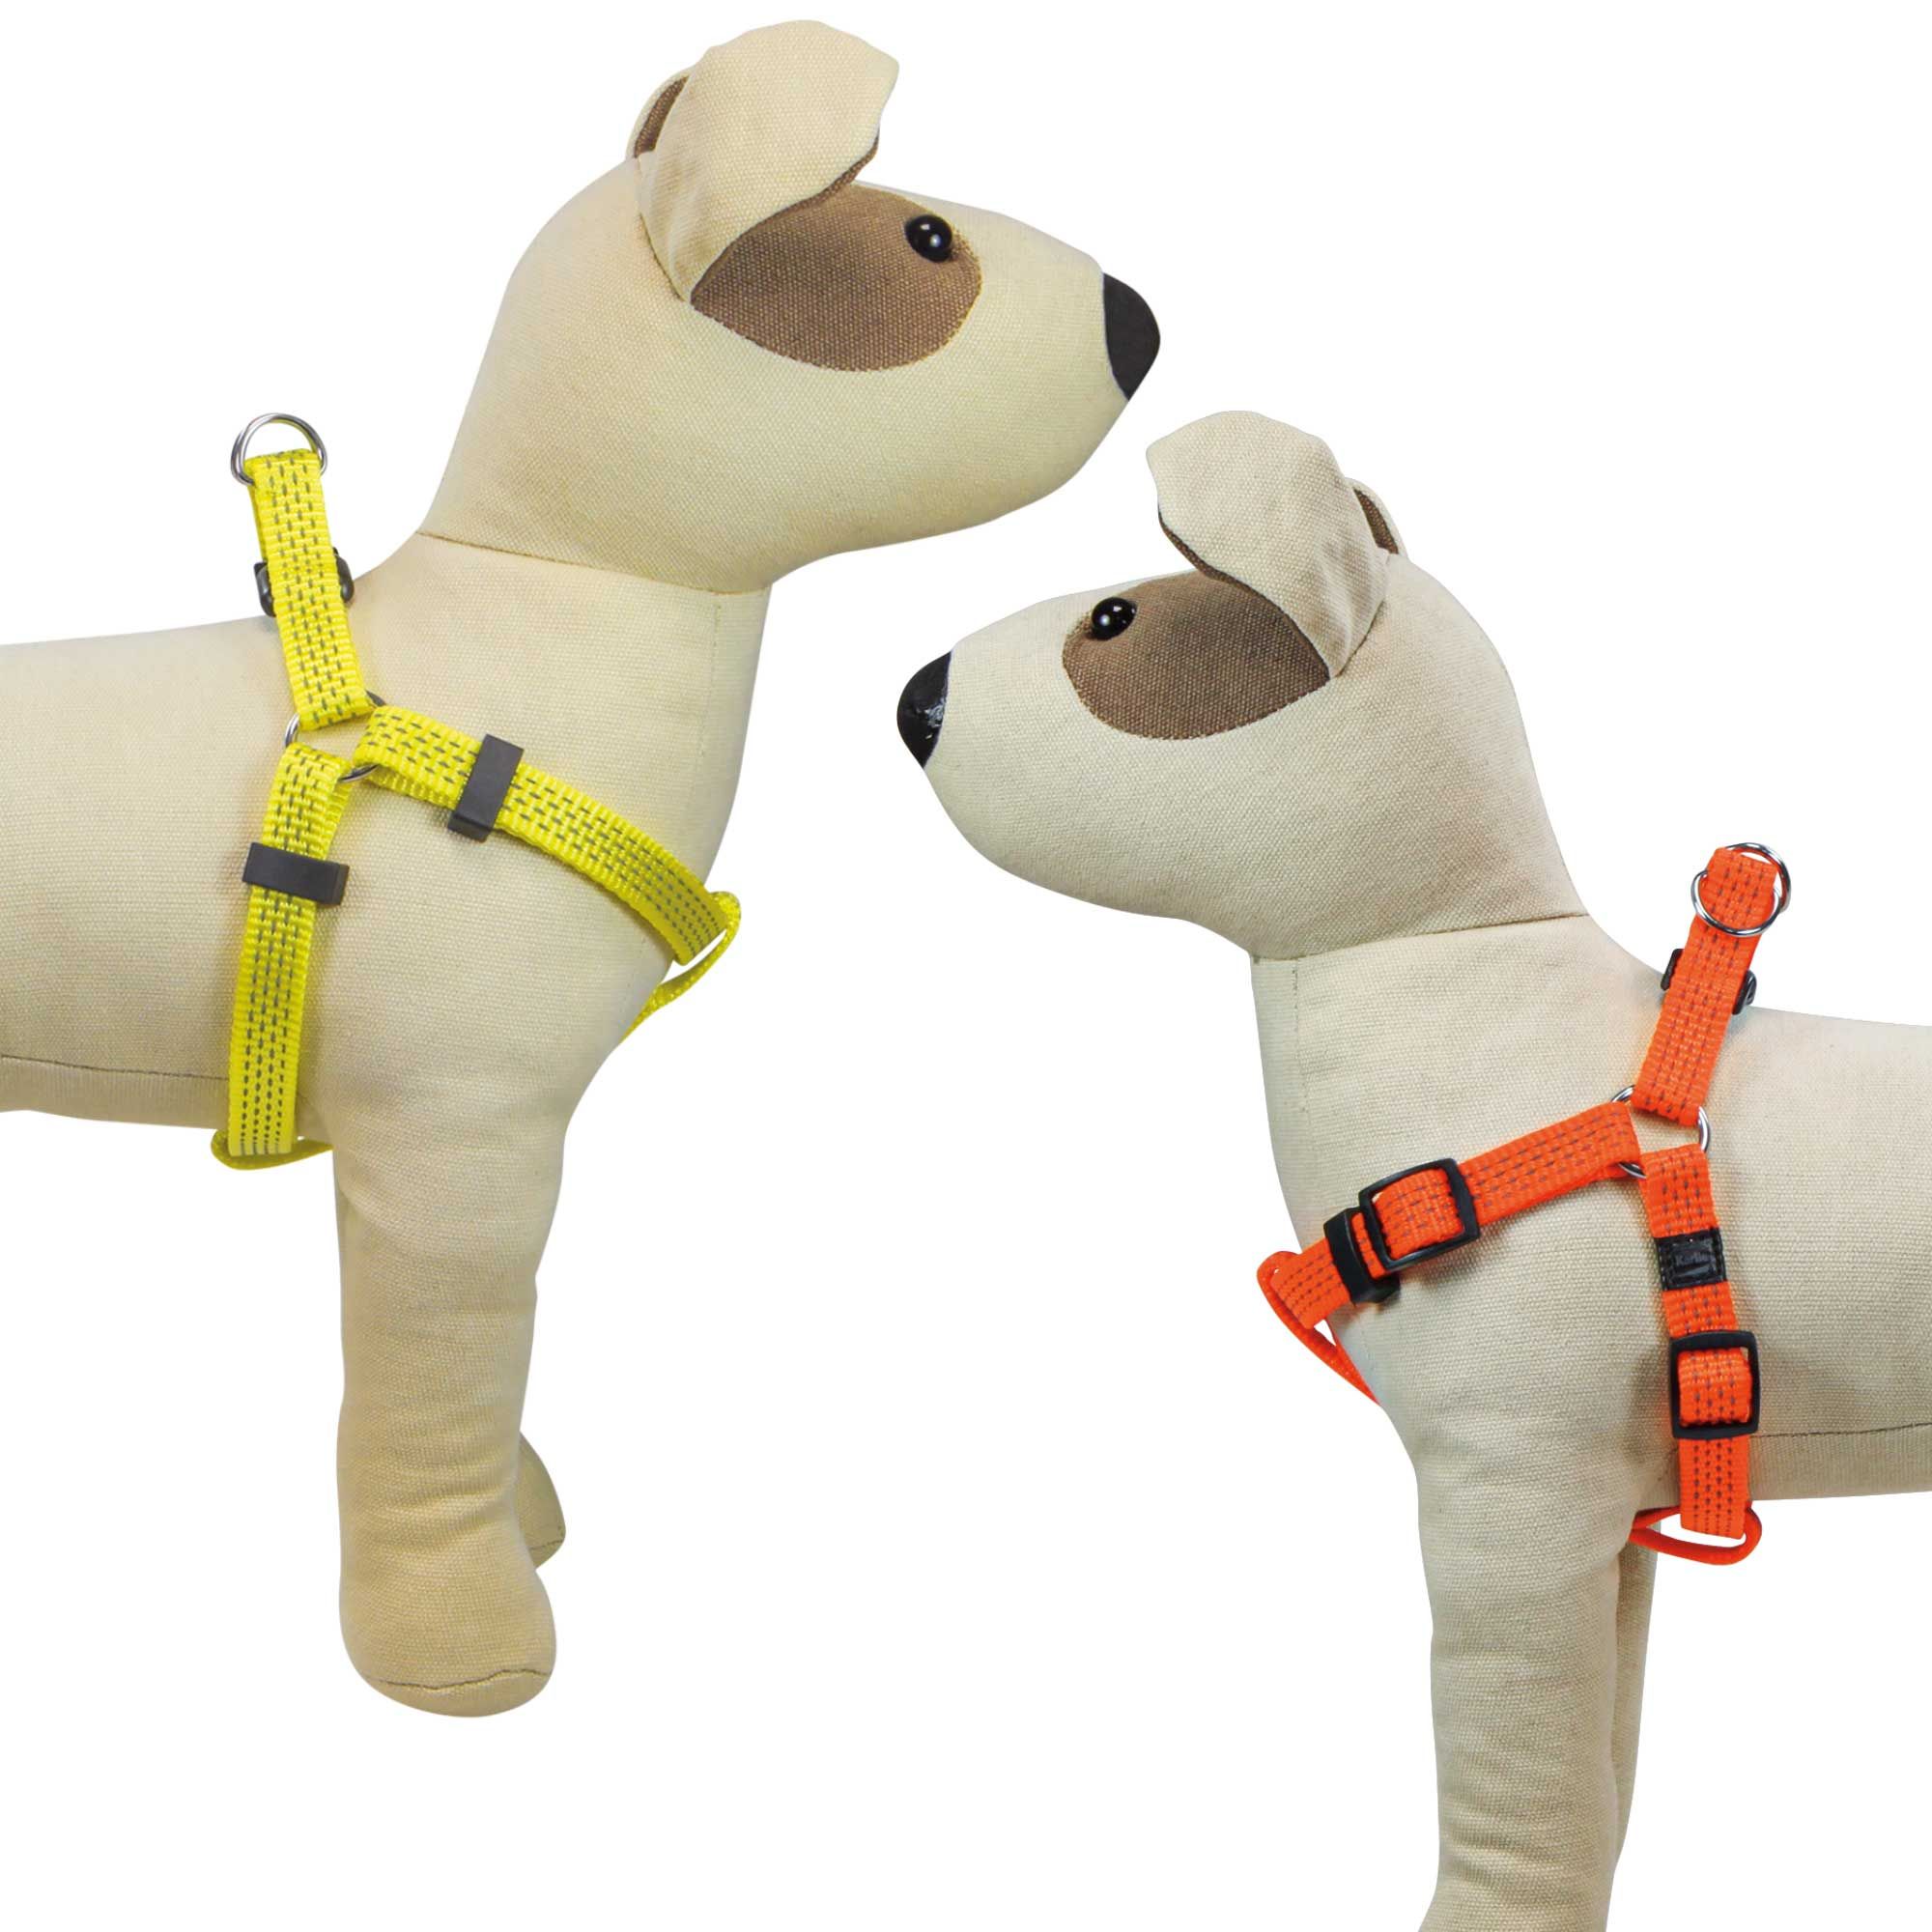 Reflex Hundegeschirr - aus pflegeleichtem Nylon mit Zugentlastung